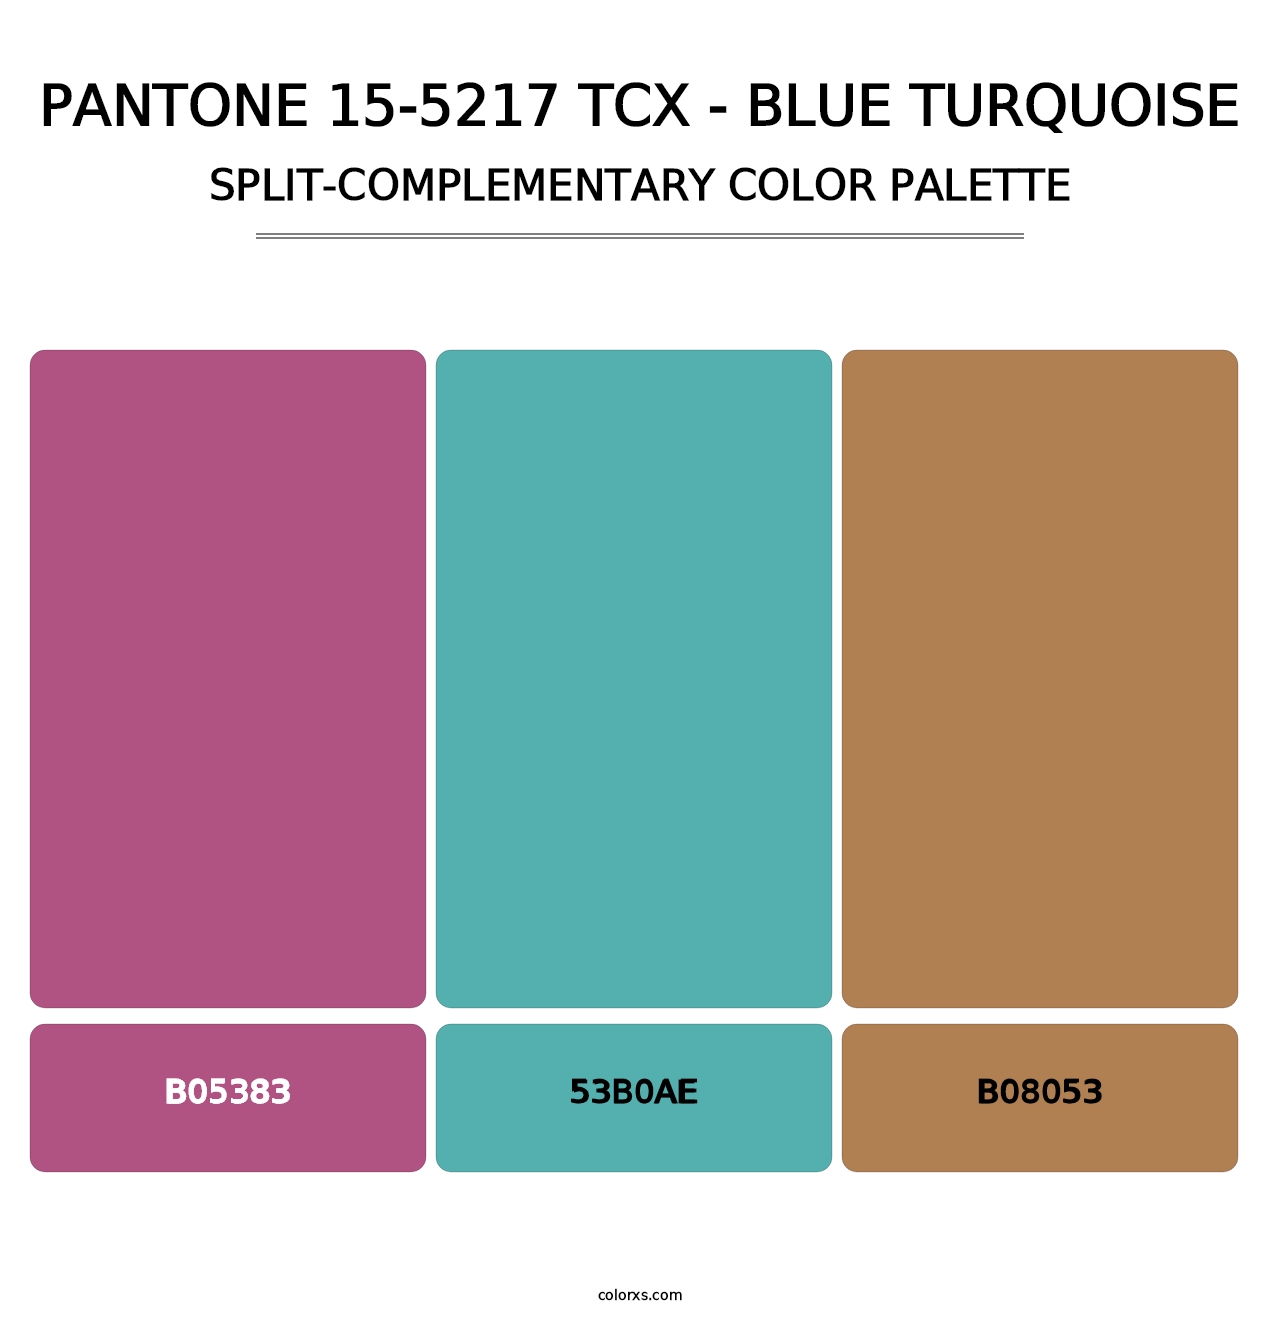 PANTONE 15-5217 TCX - Blue Turquoise - Split-Complementary Color Palette